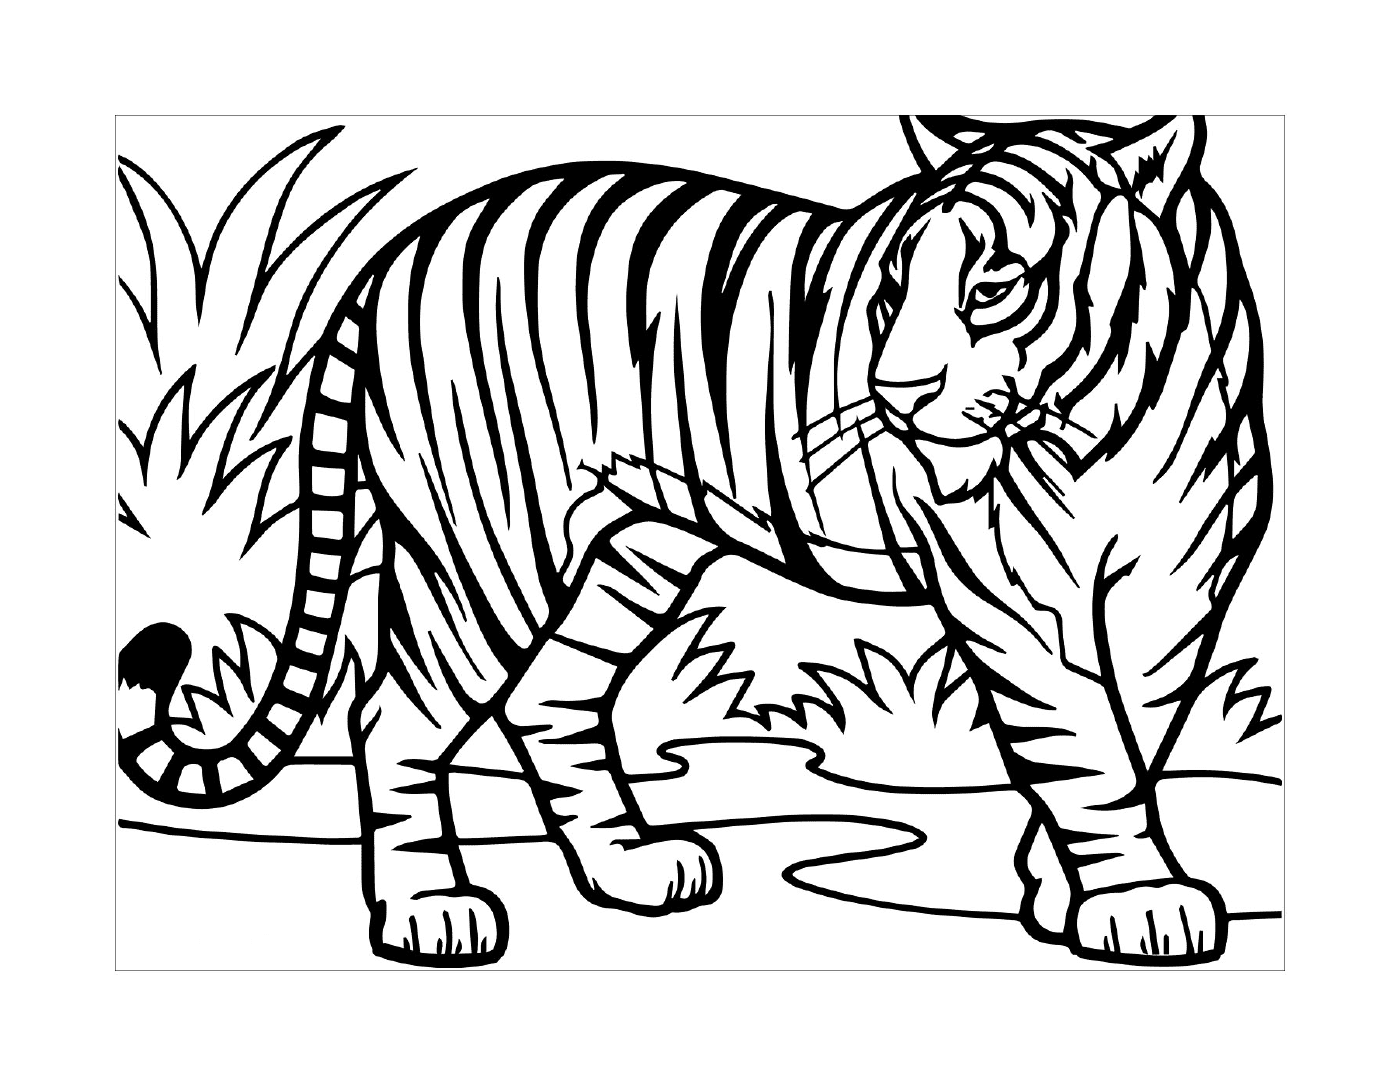  тигр, гуляющий в азиатском лесу с голубыми глазами 